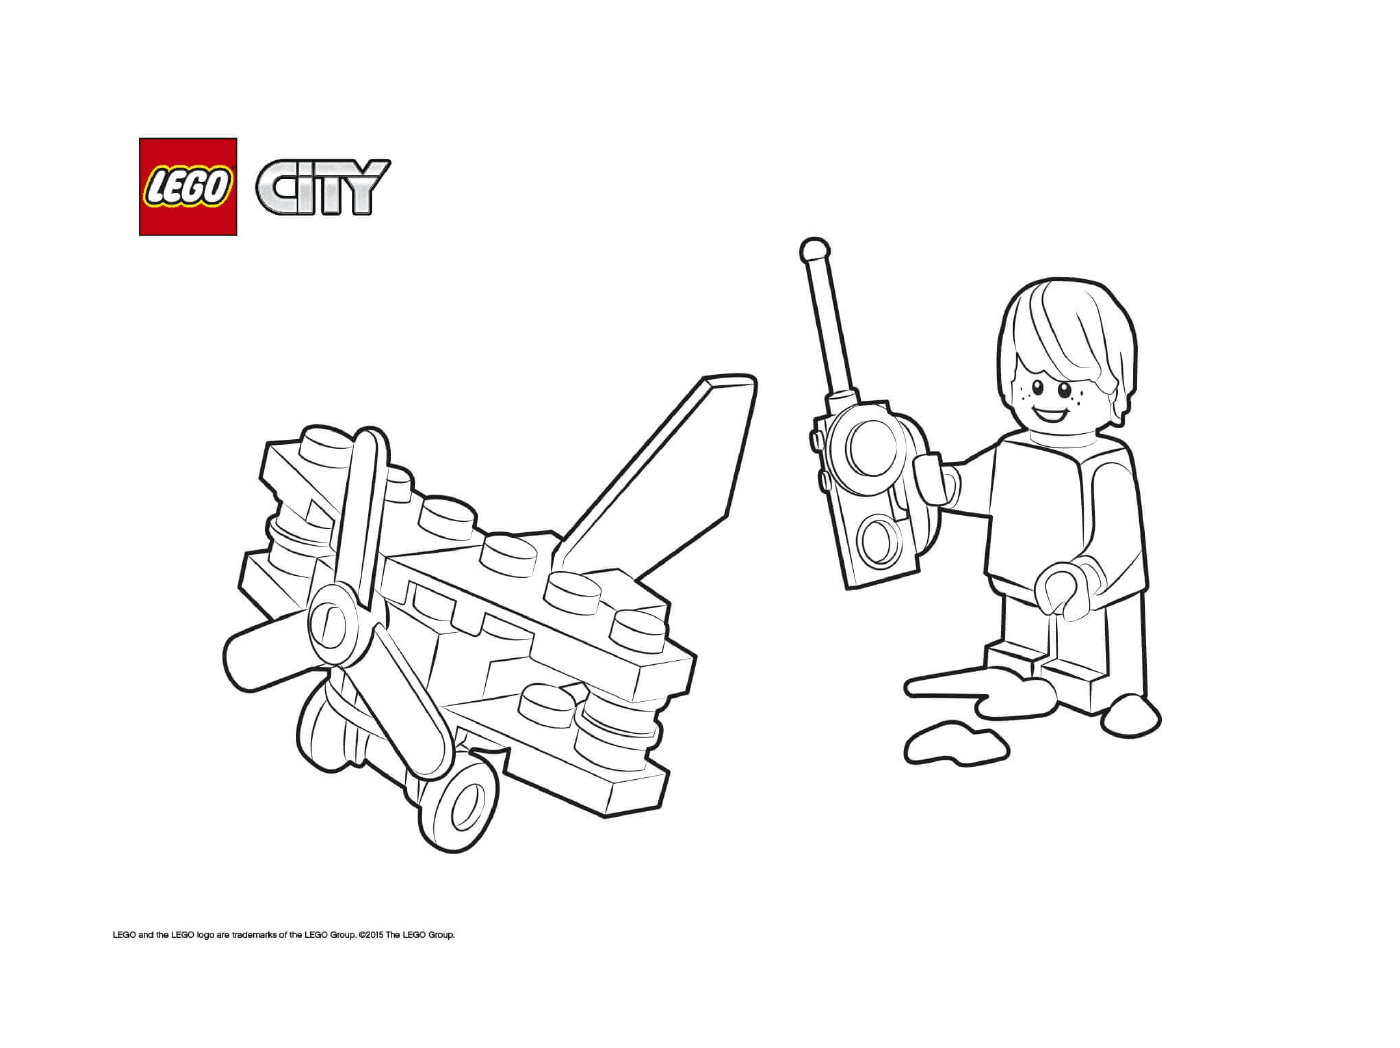  छोटा हवाई जहाज़ लेगो सिटीworld. kgm 